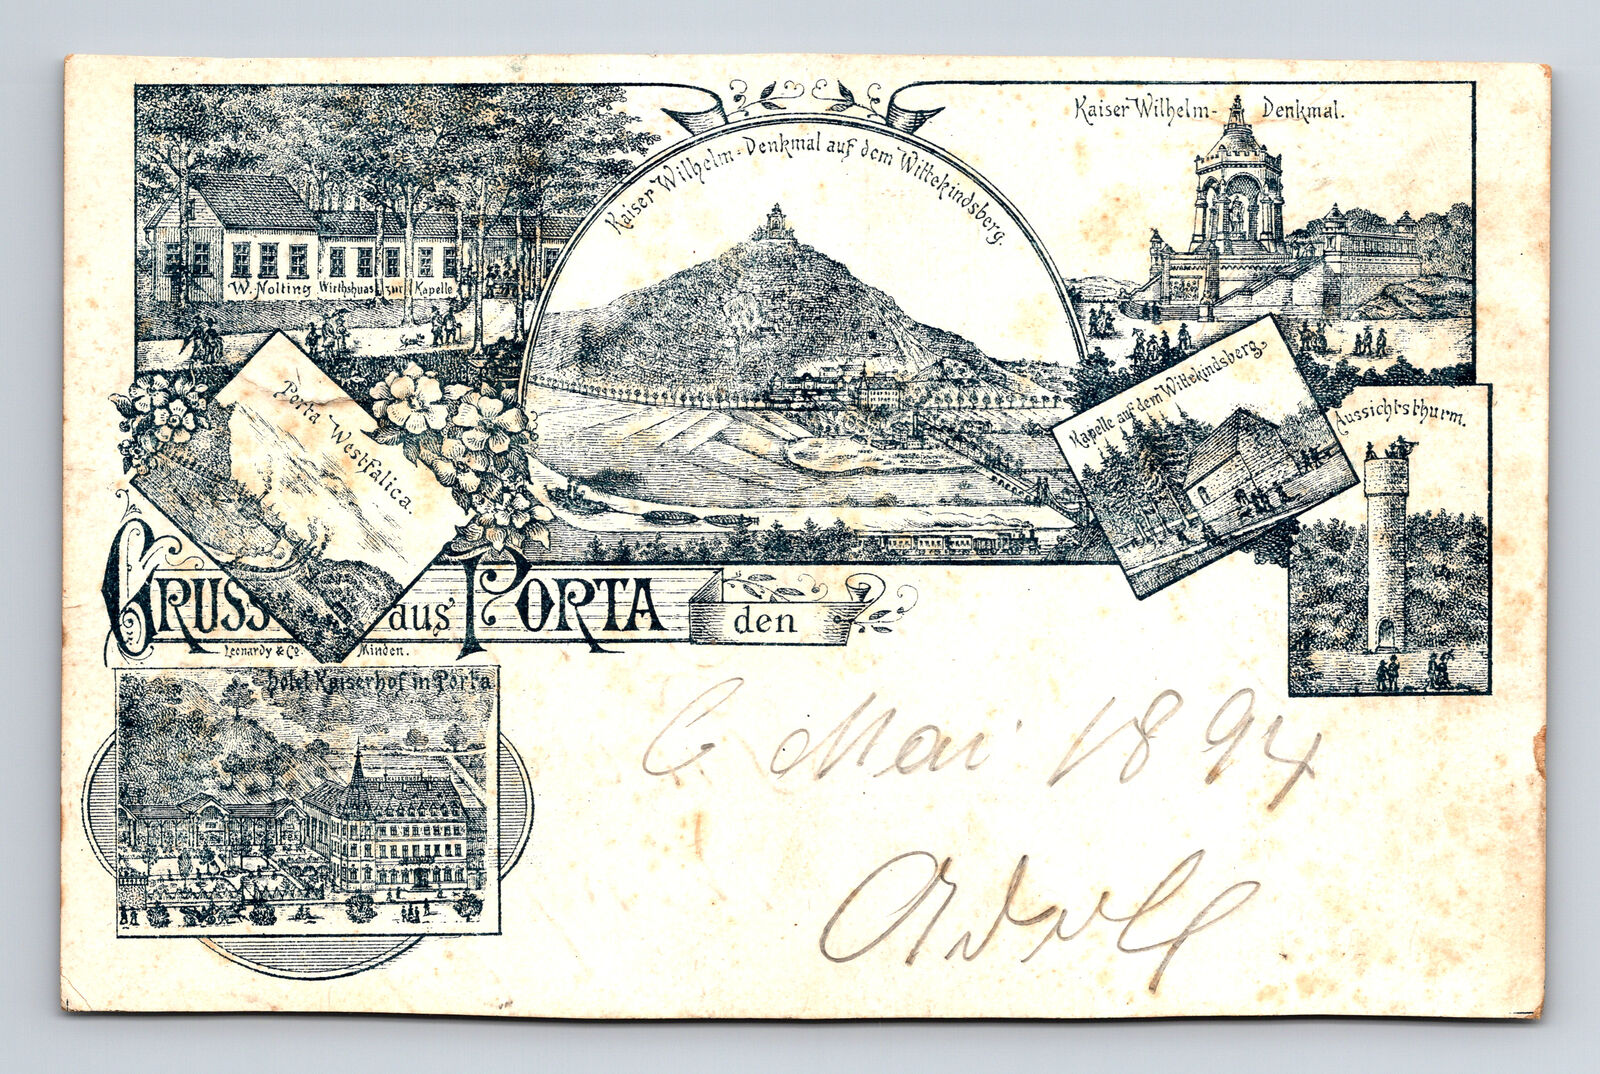 c1894 Gruss Porta Wesfalica Germany Multi-View Kaiser Wilhelm Germany Postcard